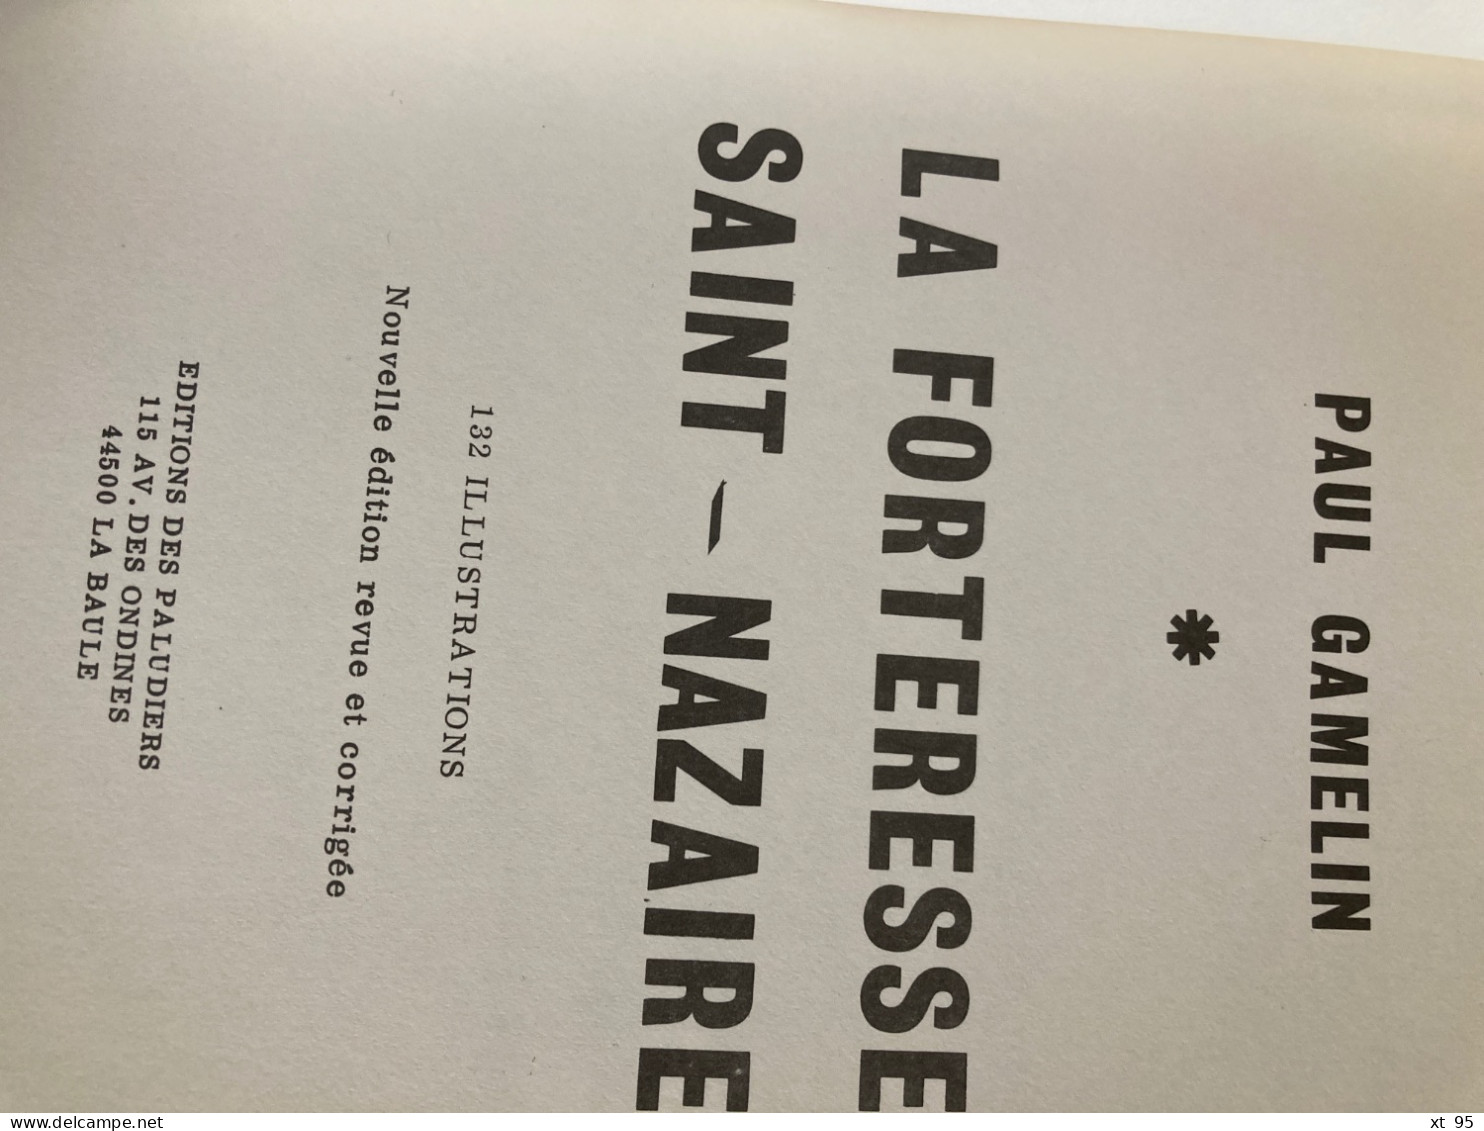 La Forteresse De Saint Nazaire - 1940-1945 - Paul Gamelin - 1980 - 116 Pages - Guerre 1939-45